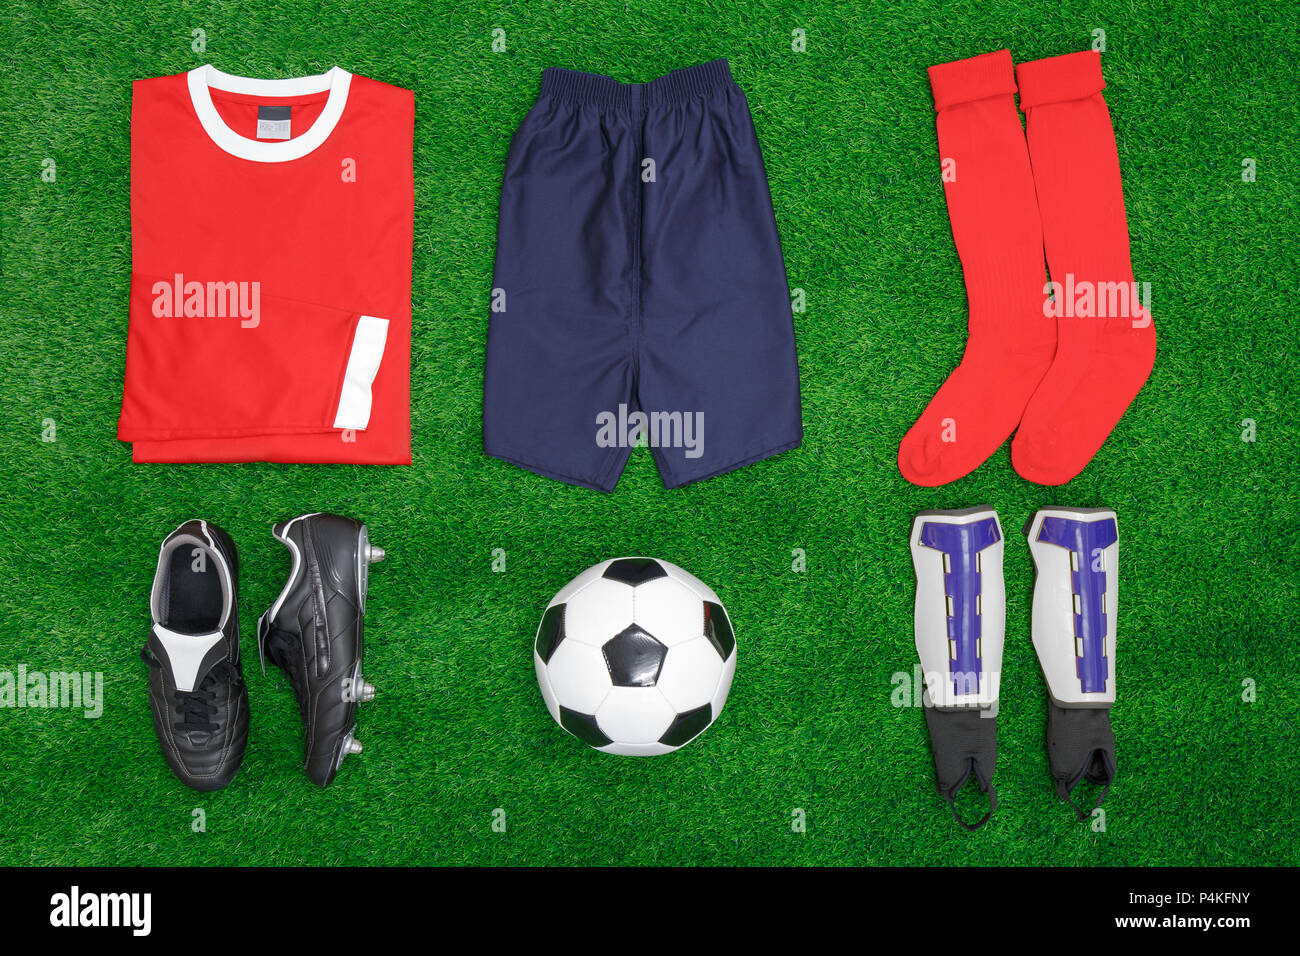 Une télévision mise disposition de football ou soccer kit sur l'herbe, avec chemise, short, chaussettes, chaussures, protège-tibias et la balle. Banque D'Images